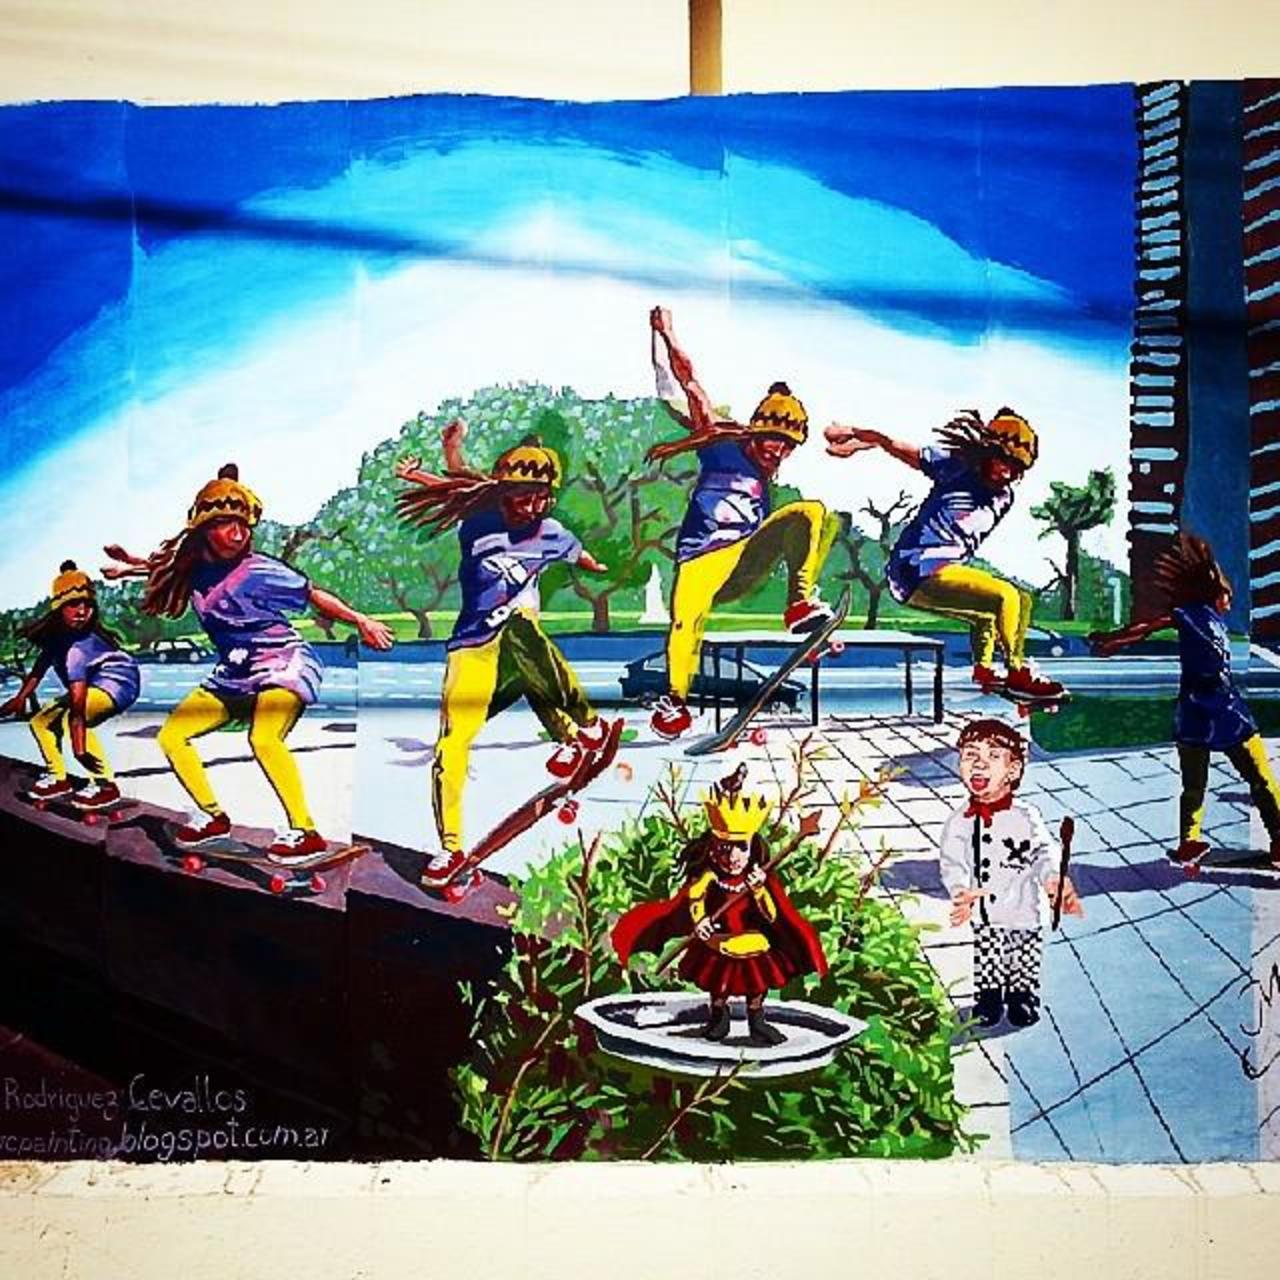 Skating! #Mural en #BuenosAires.
#graffiti #art #arte #streetart #artecallejero #instagram… http://ift.tt/1JBW0iq http://t.co/sGokveQV1l